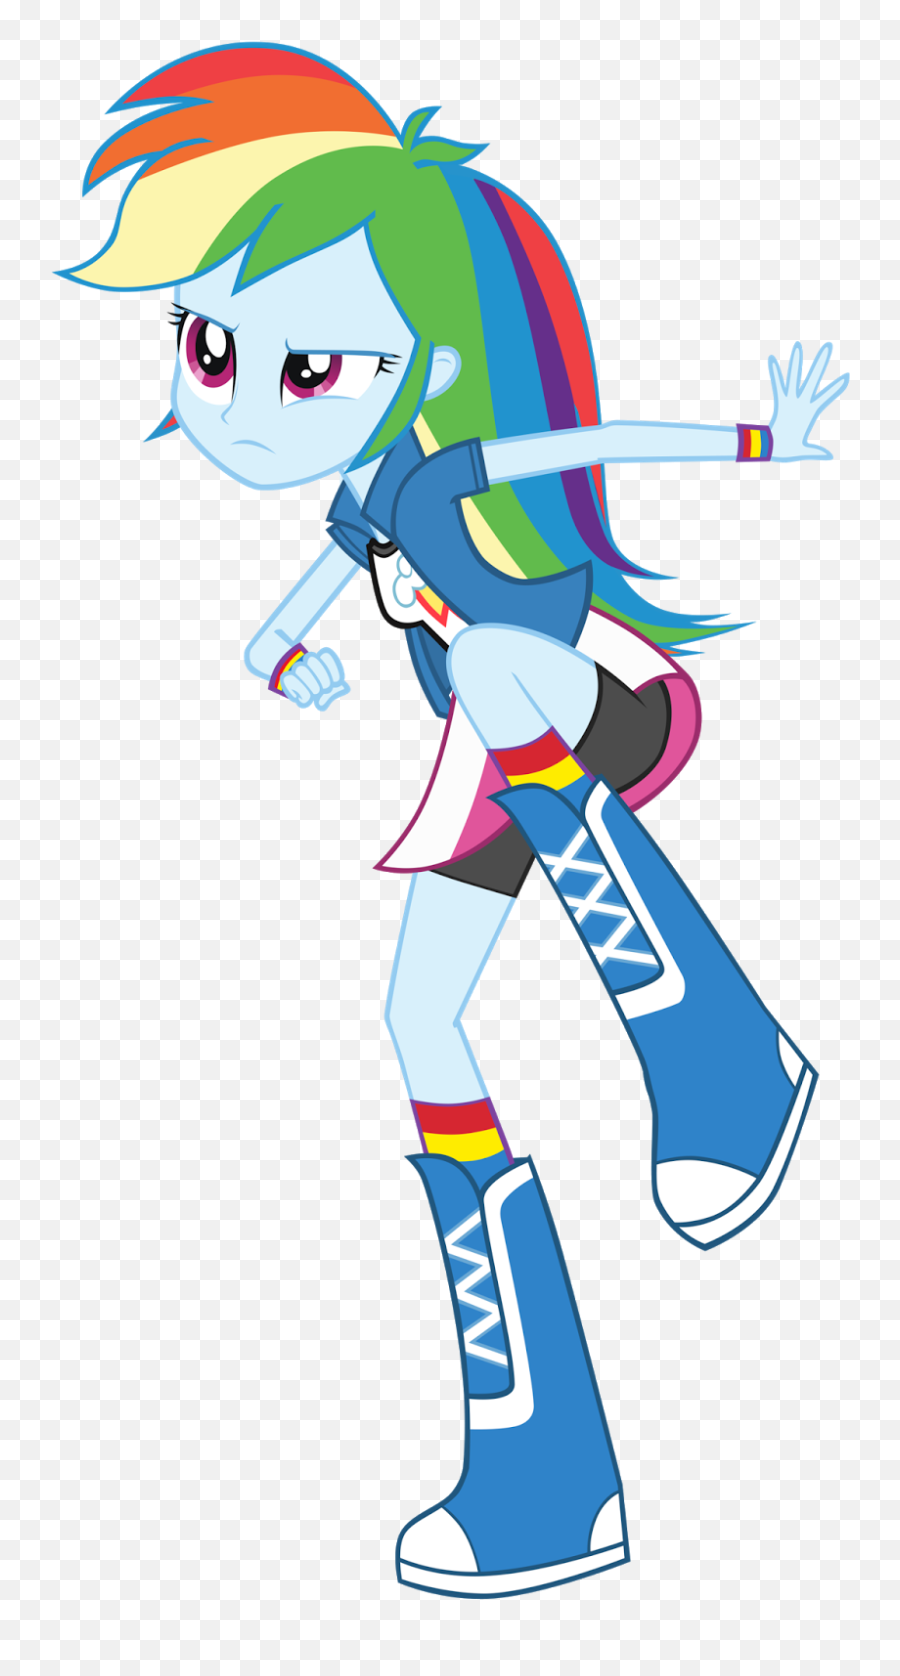 Rainbow Dash - Cia Dos Gifs Equestria Girls Rainbow Dash Emoji,Yoyo And Cici Emoticon